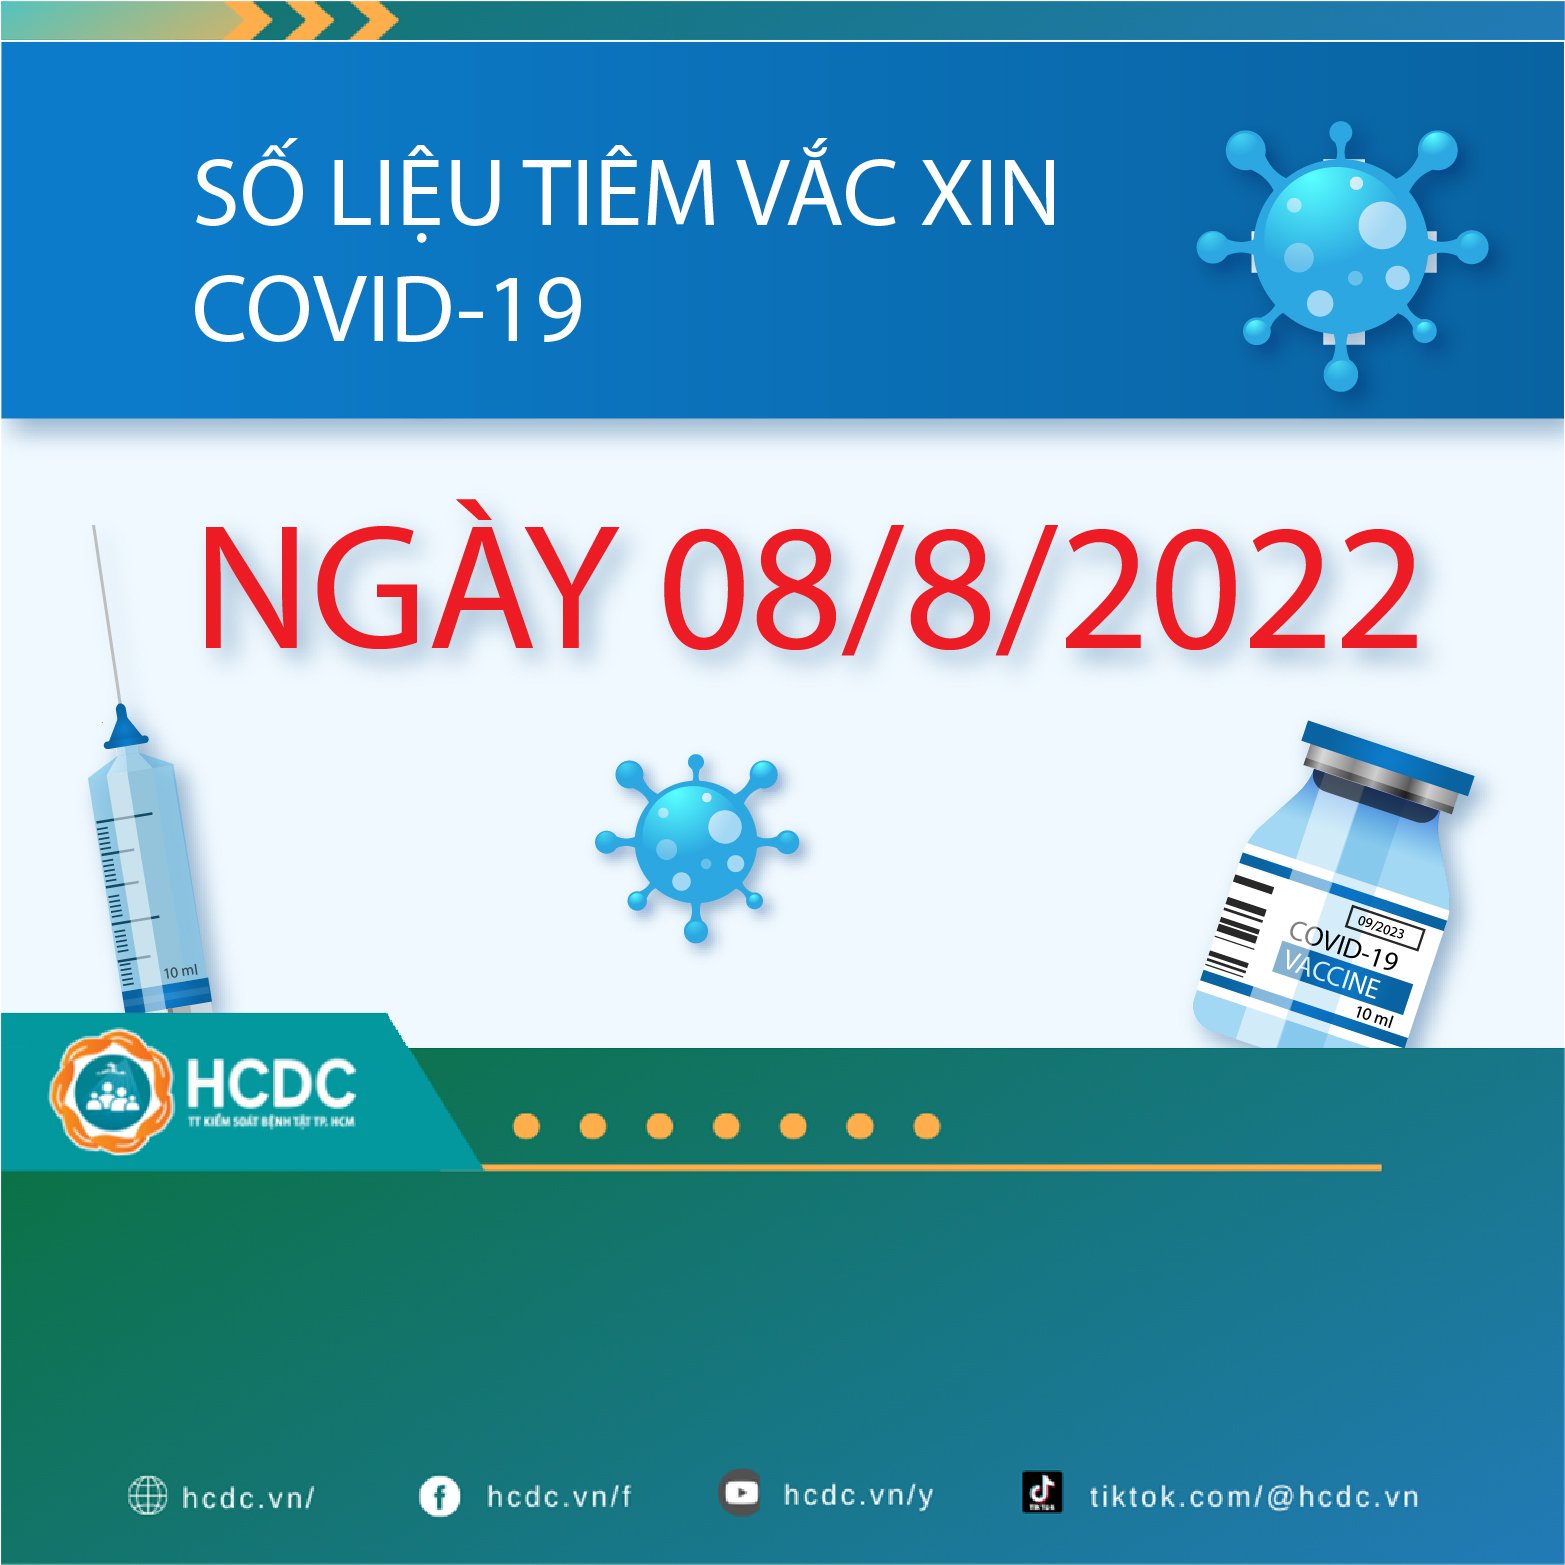 TP. Hồ Chí Minh: Cập nhật số liệu tiêm chủng vắc xin phòng chống COVID-19 ngày 08/08/2022